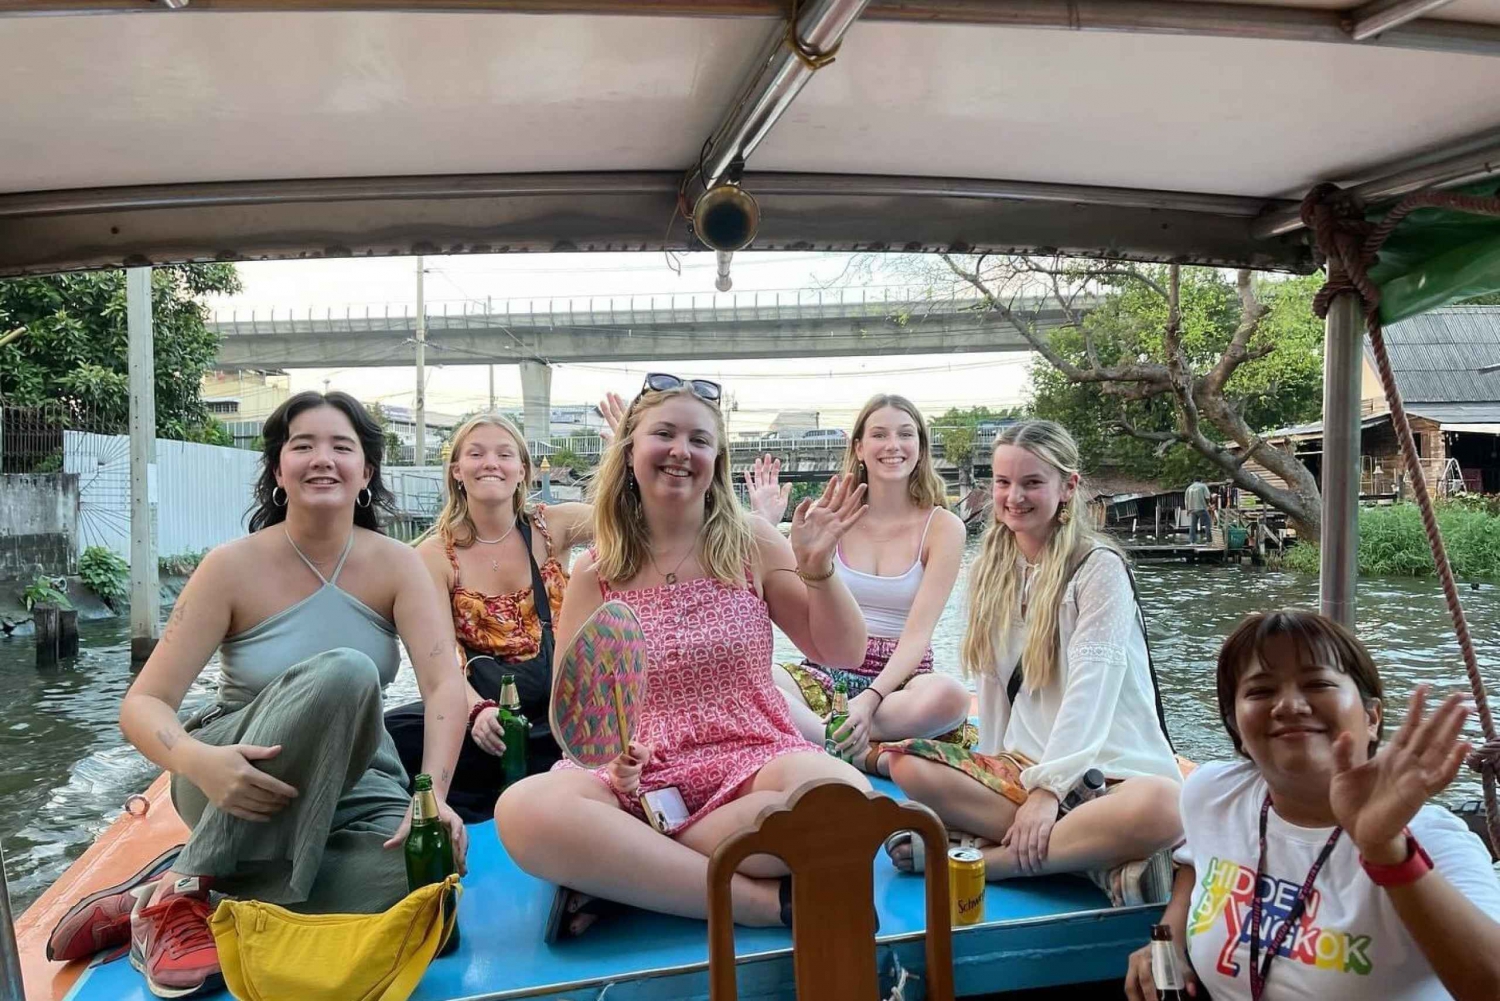 Bangkok: Un viaje por los lugares emblemáticos de Bangkok